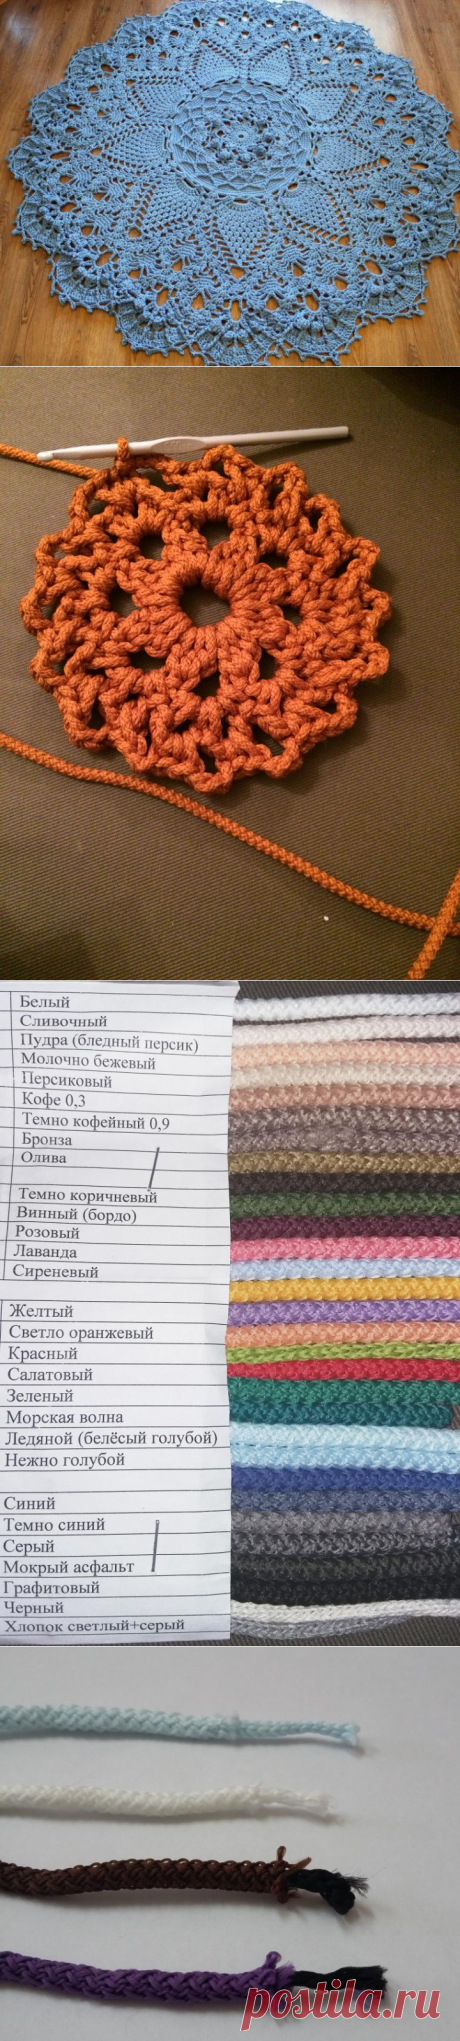 Выбираем шнуры для вязания ковров - Ярмарка Мастеров - ручная работа, handmade